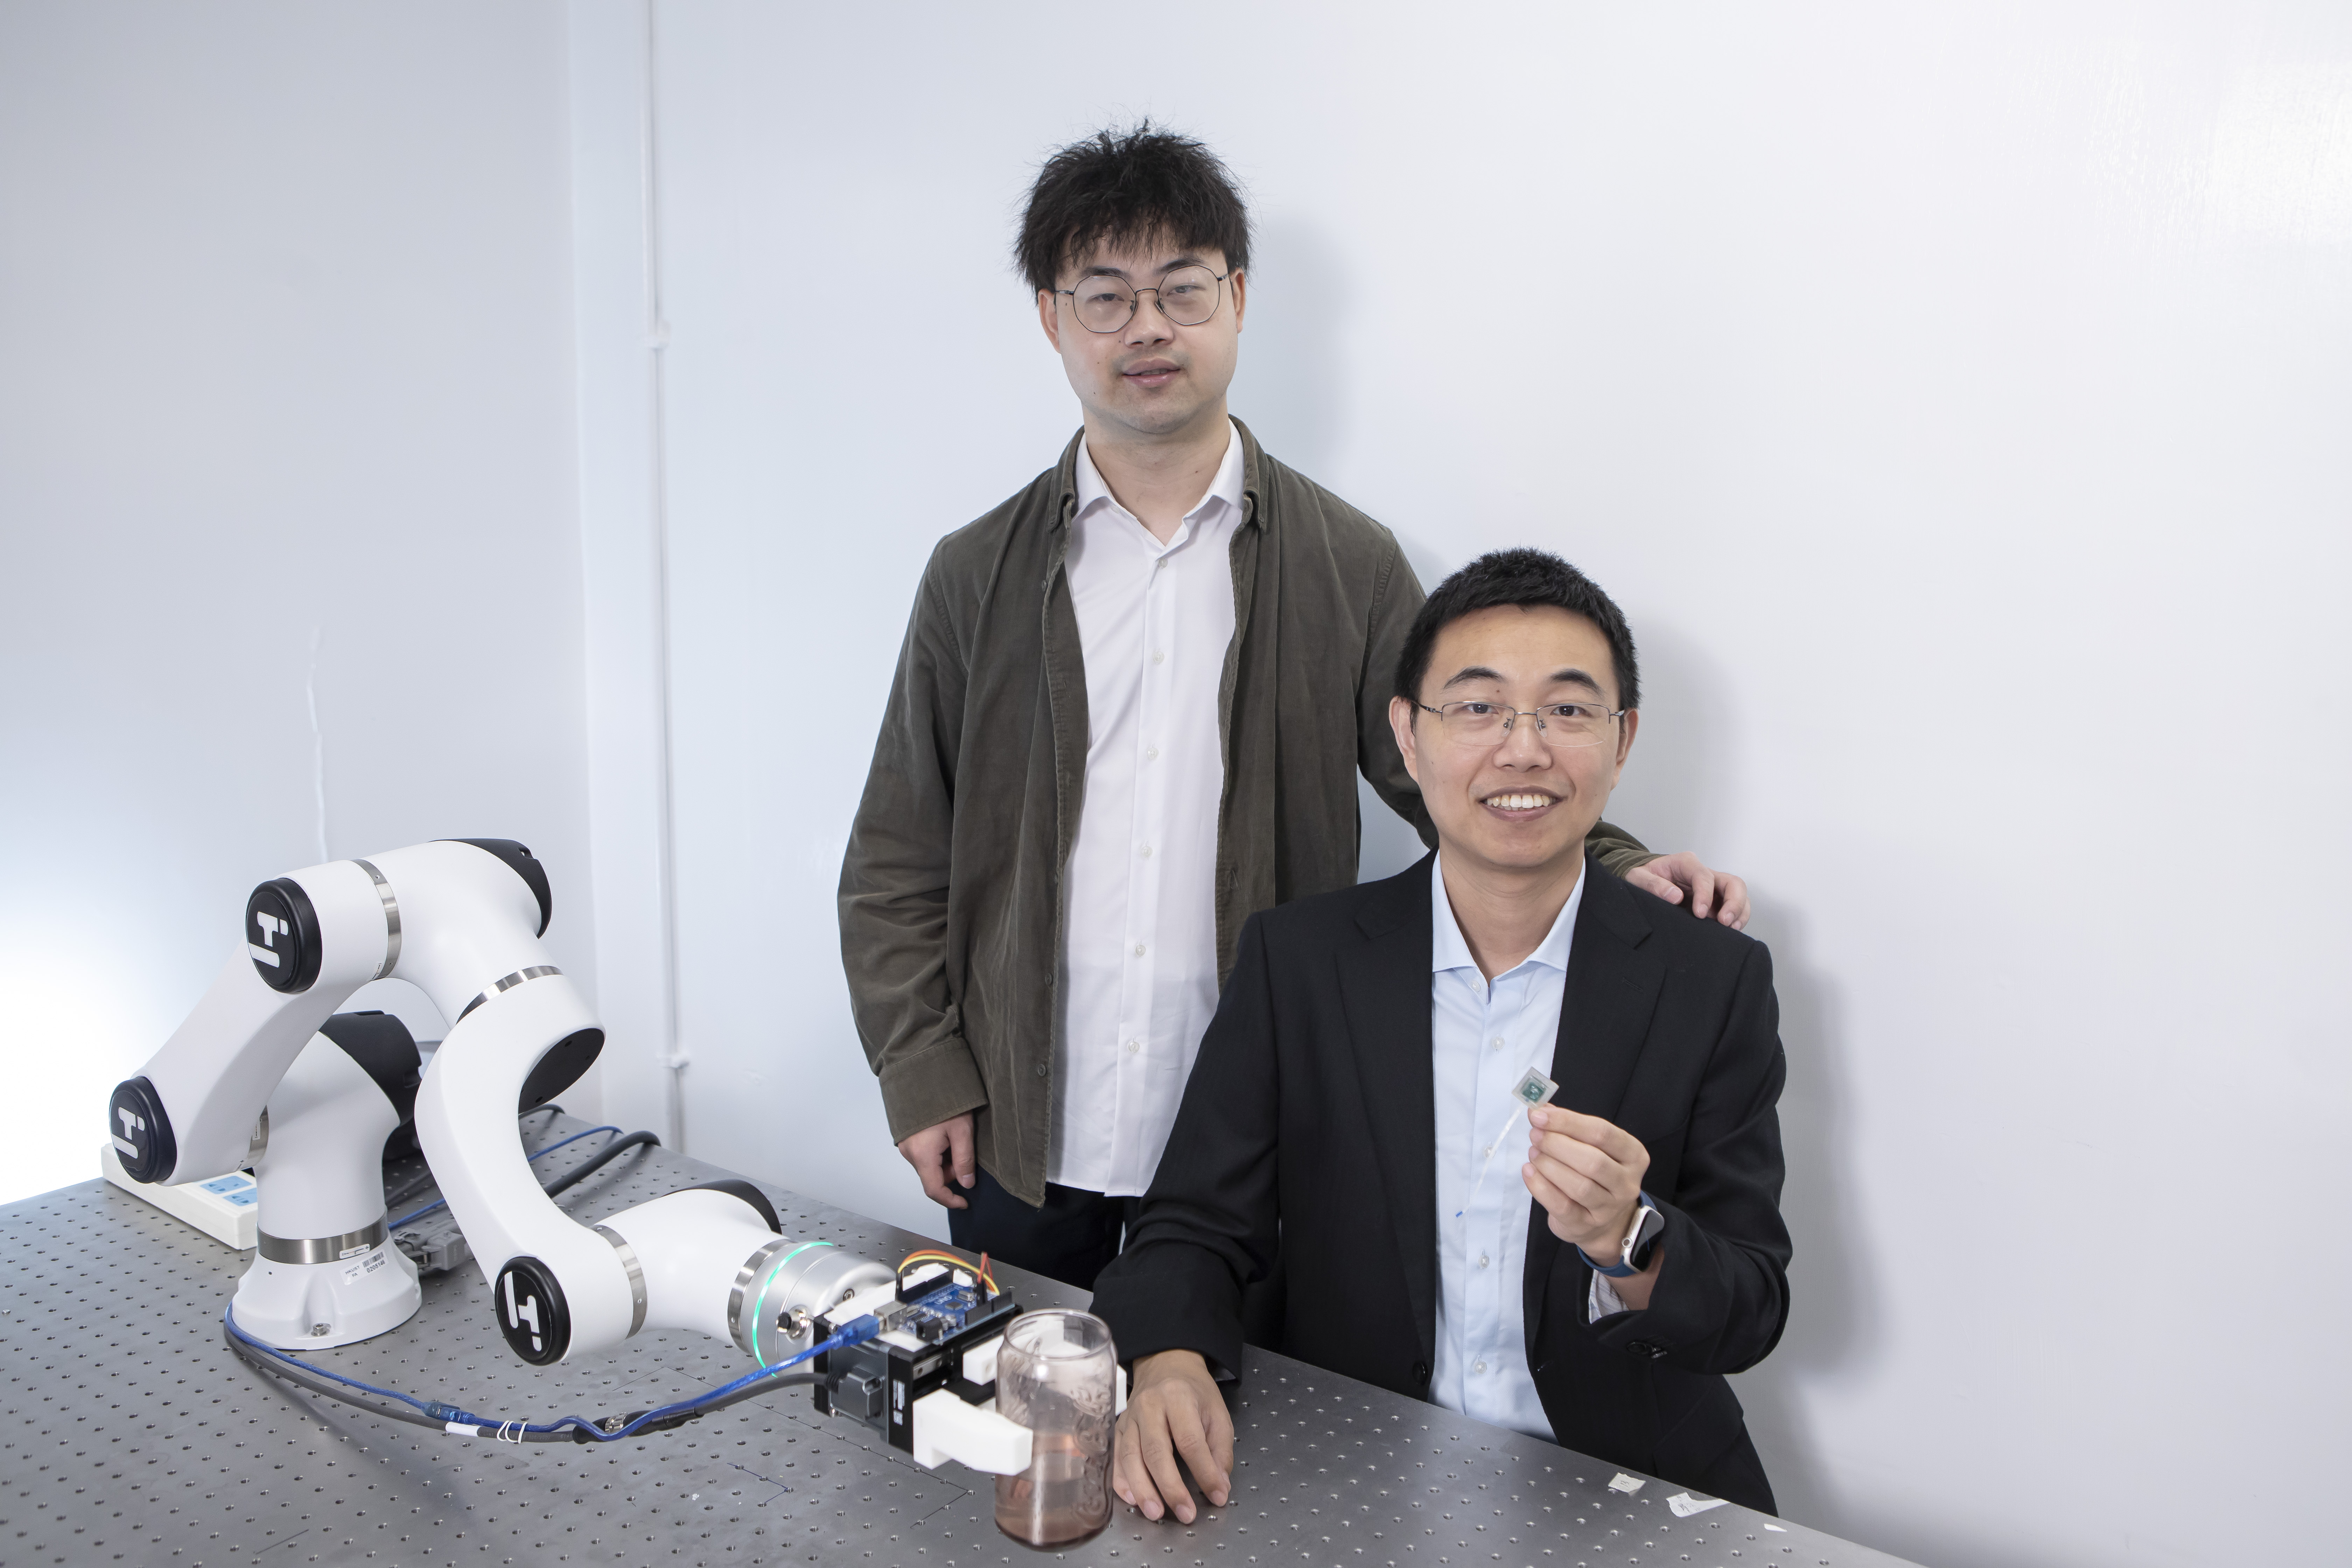 获选首批产学研1+计划的「机器人灵巧操作终端」项目来自香港科技大学工学院研究团队，由电子及计算机工程学系副教授申亚京（右） 率领，研究助理教授杨雄（左）担任负责人。